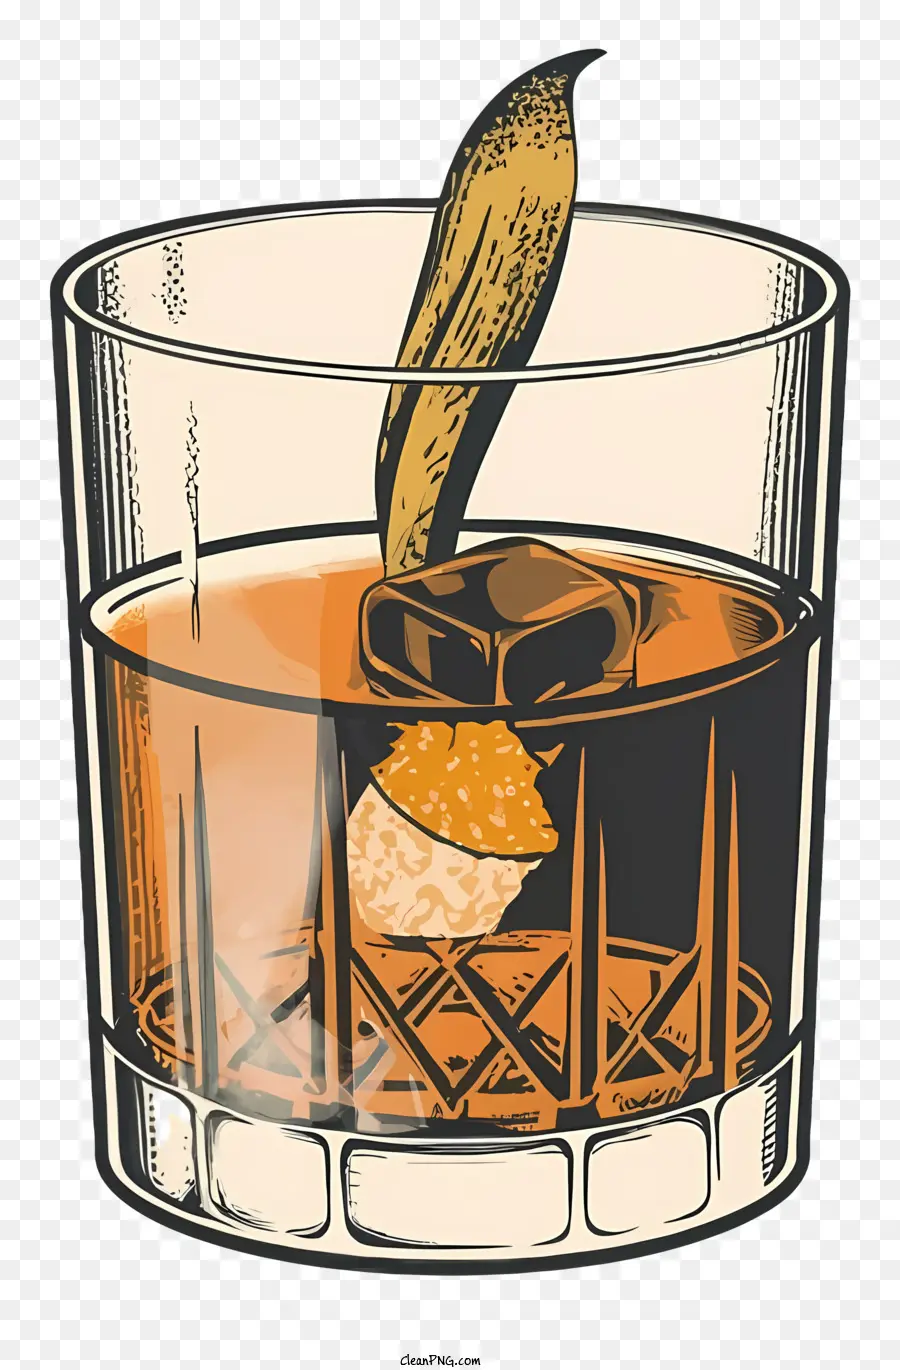 Glass of Rượu rượu whisky cổ điển uống nước đá trong quế thủy tinh trong đồ uống - Vẽ cocktail whisky cổ điển với quế quế